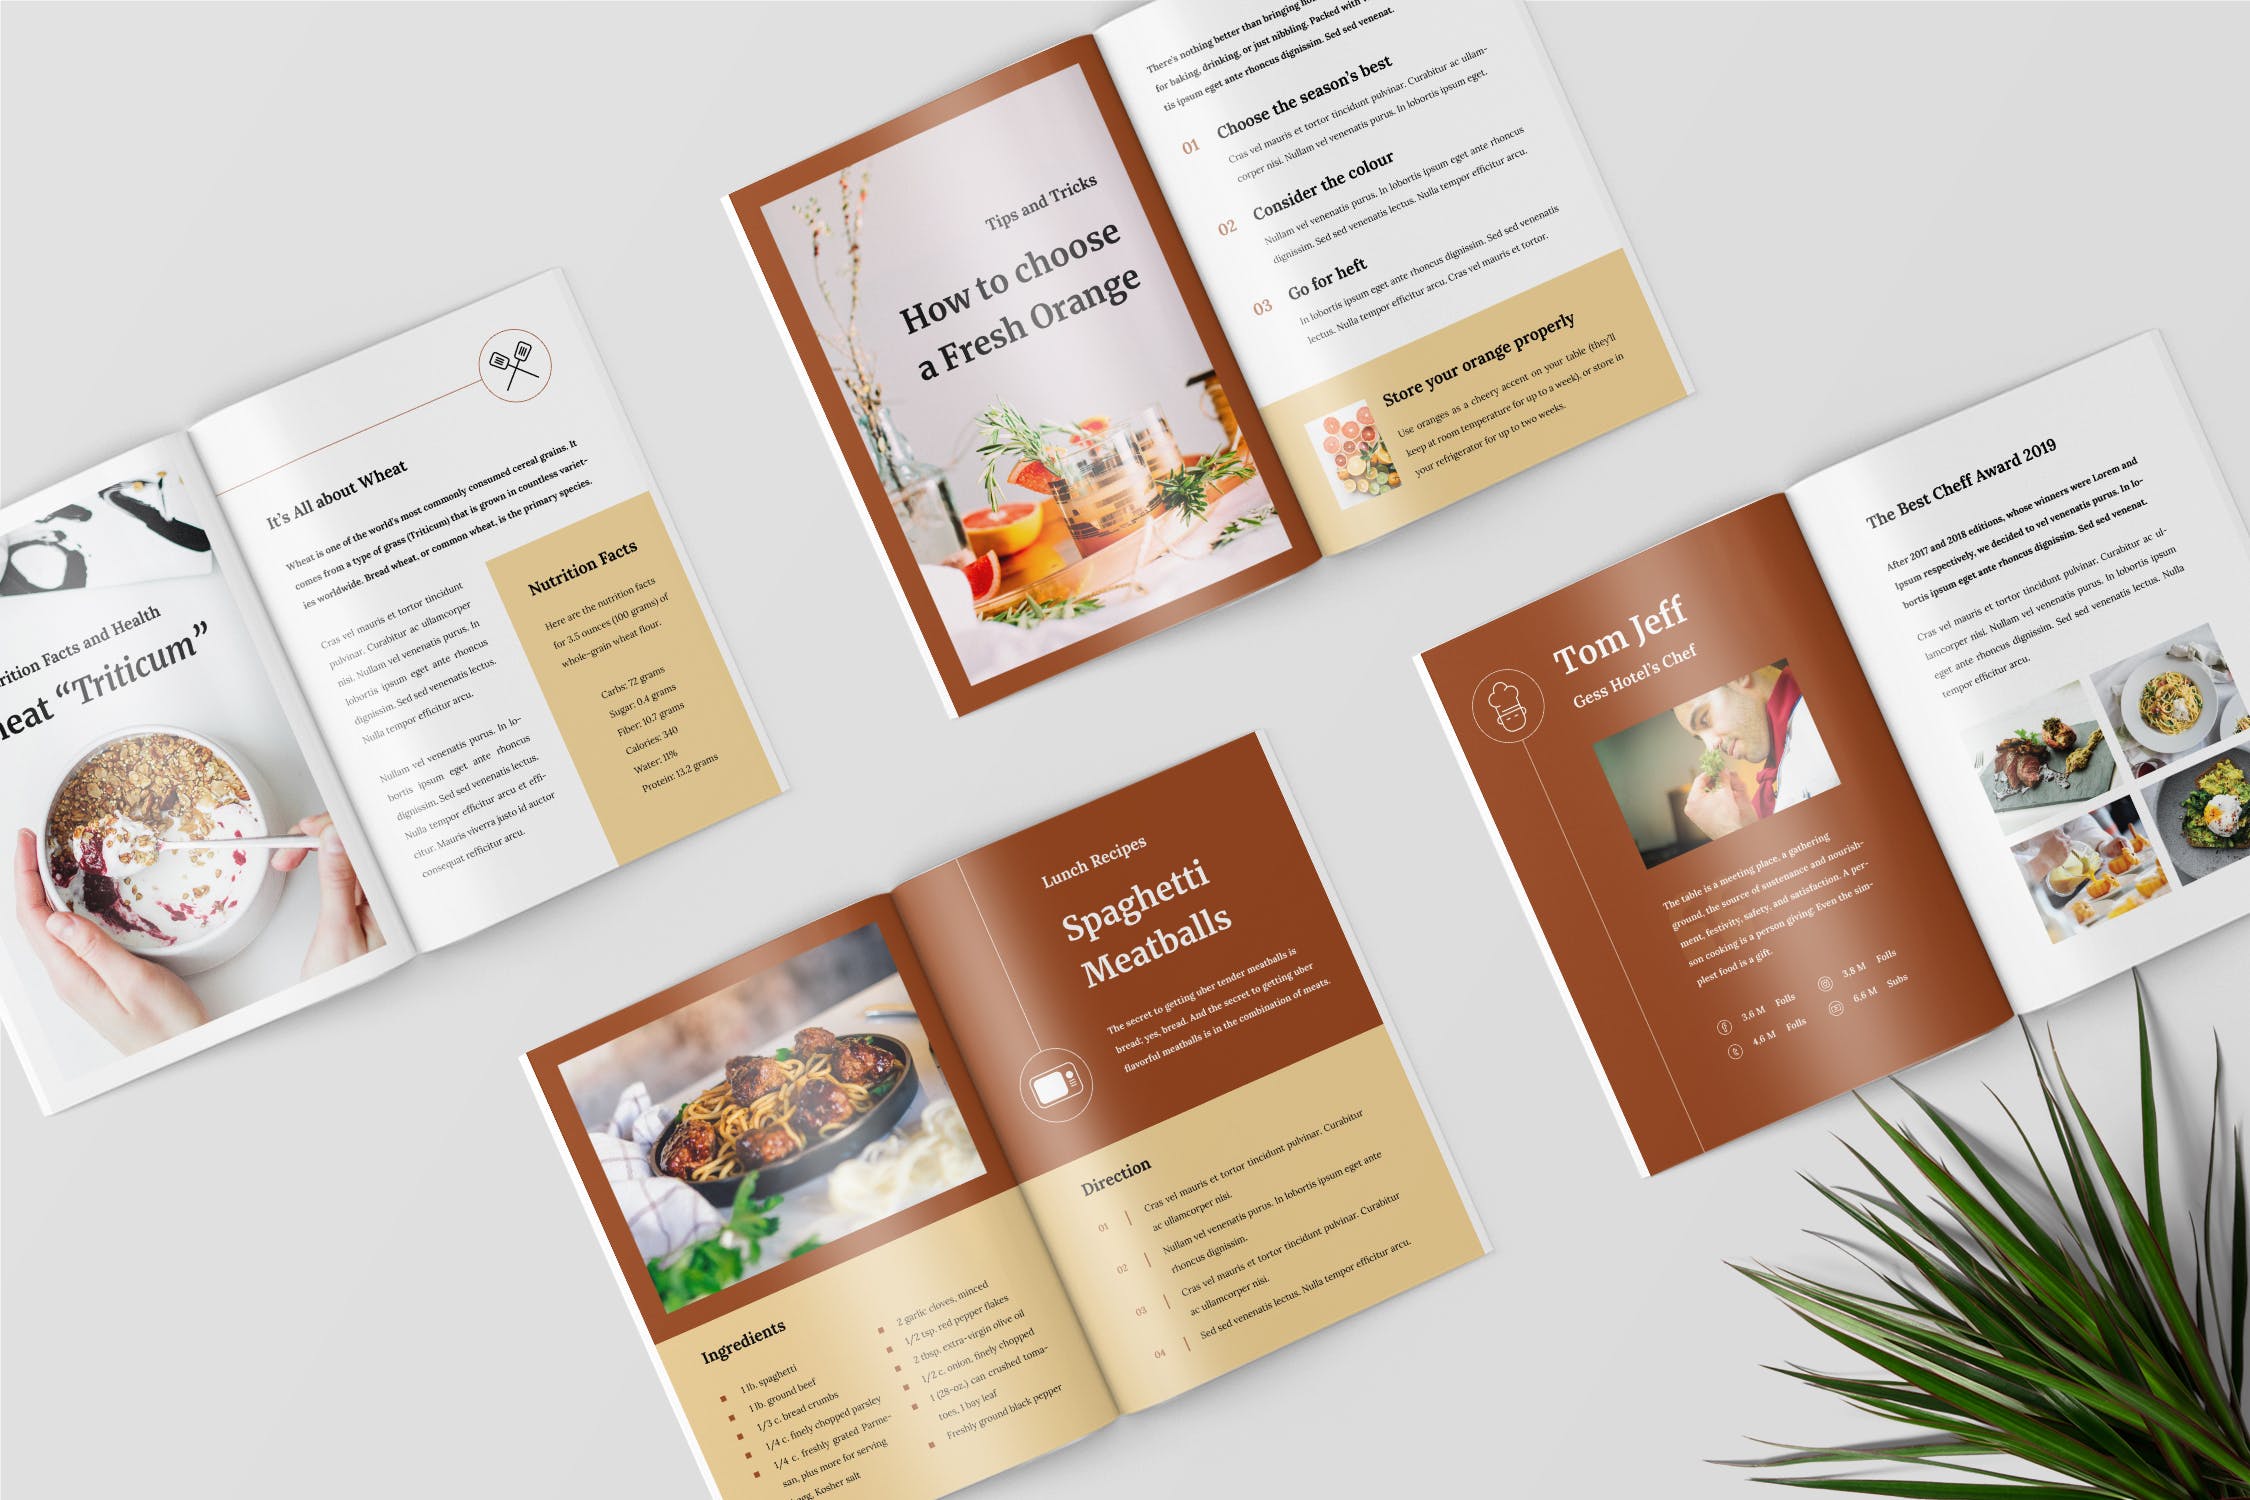 食谱美食主题杂志排版设计制作模板 Recipe Magazine Template插图(1)